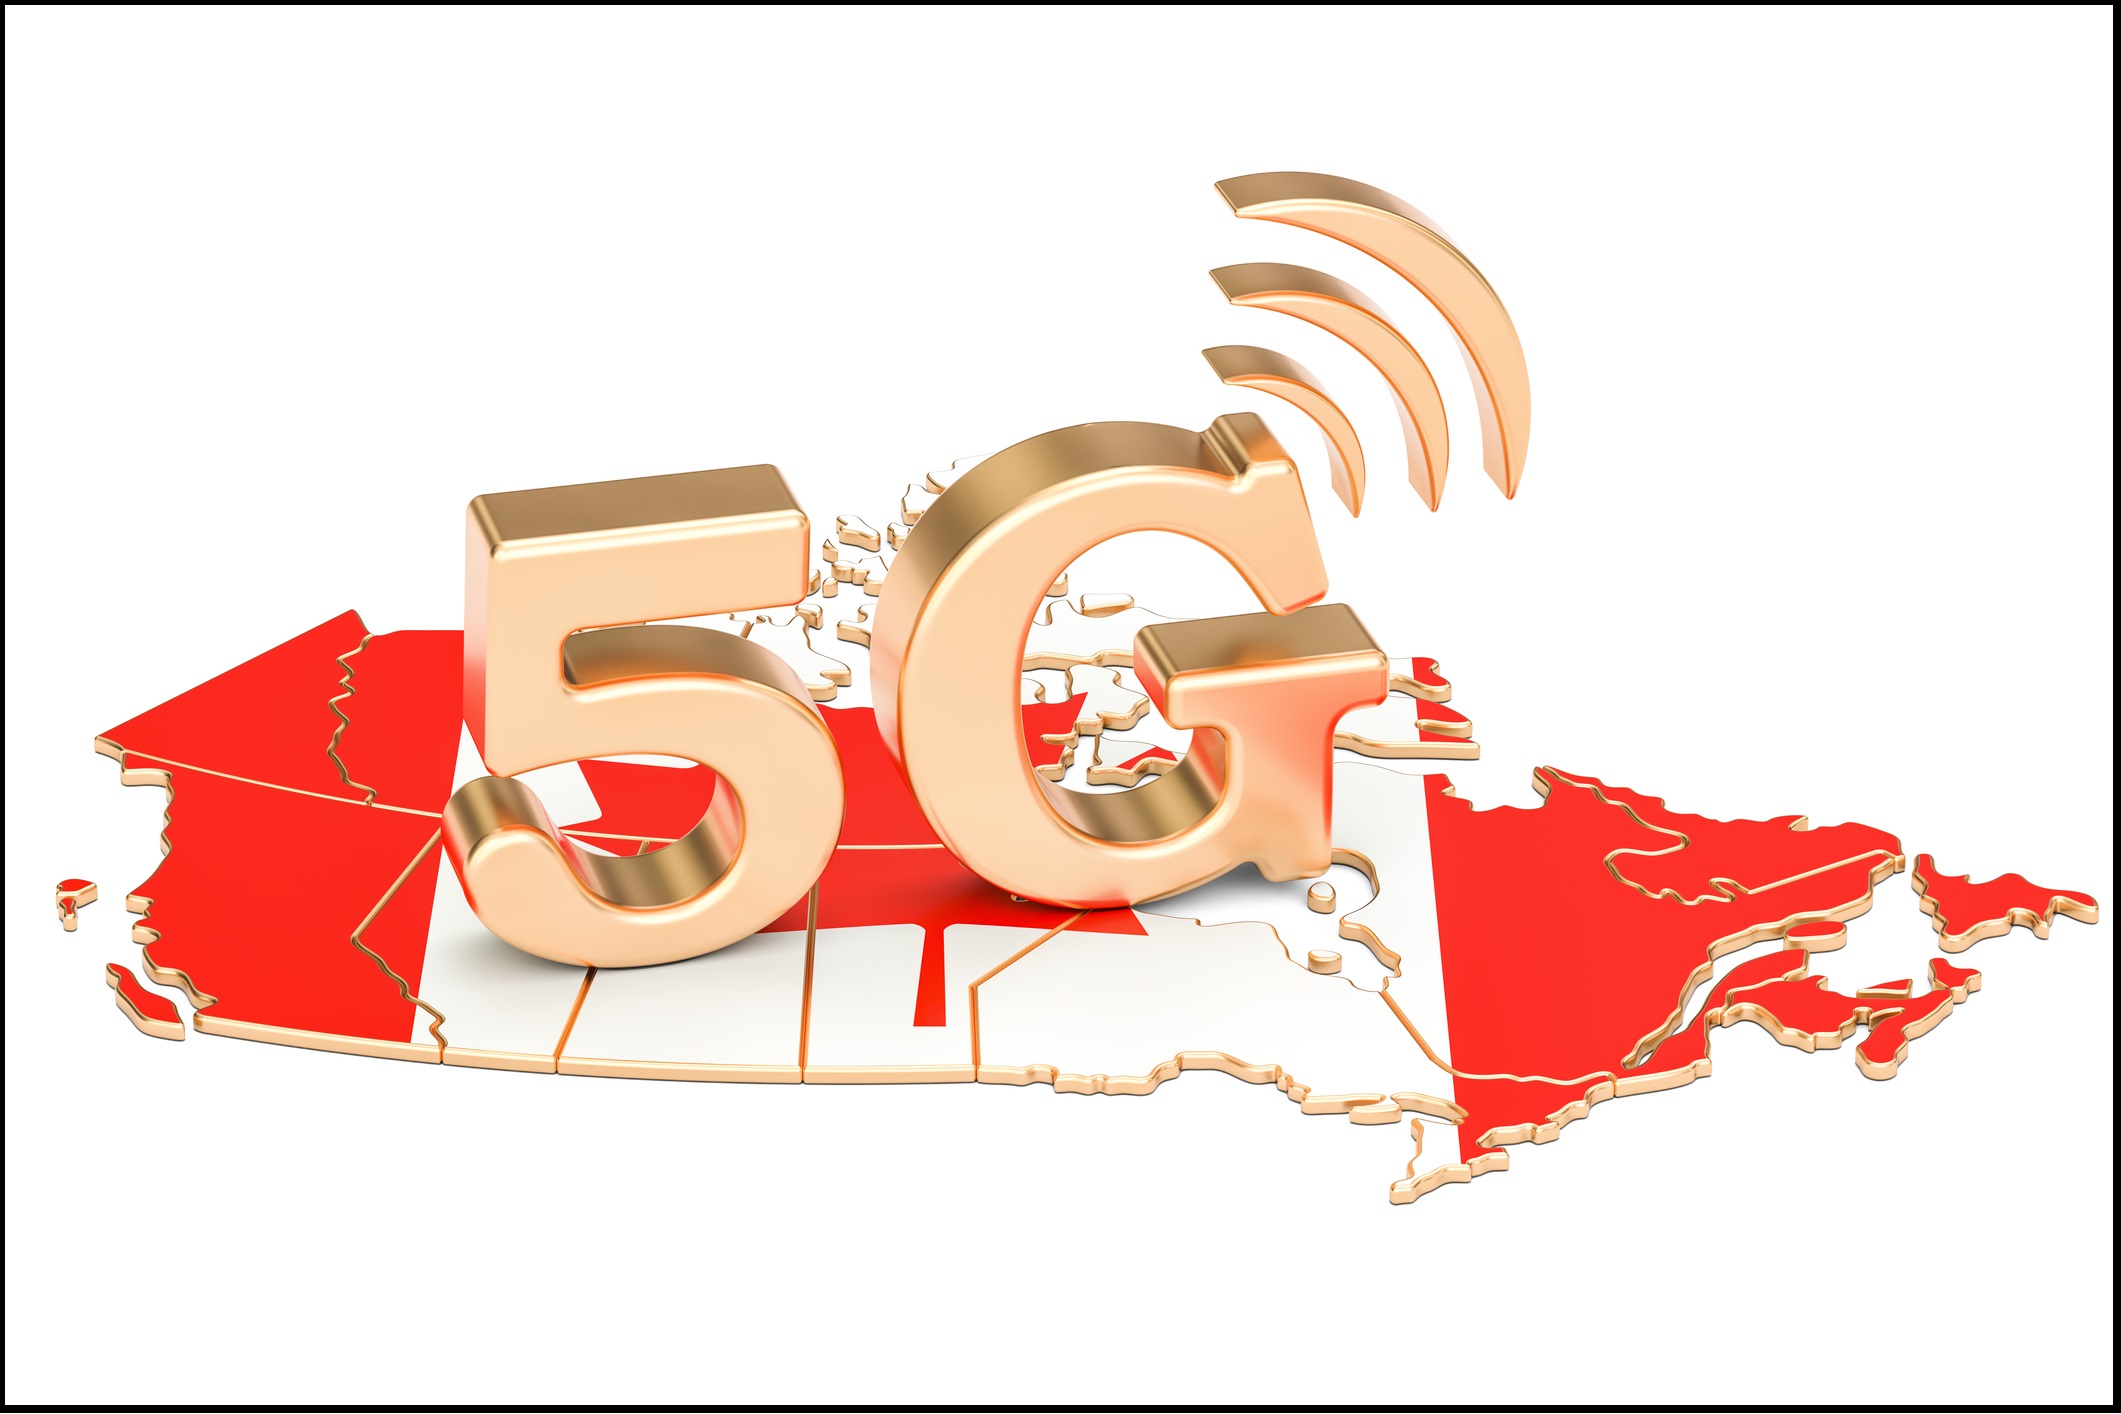 فناوری 5G در کانادا